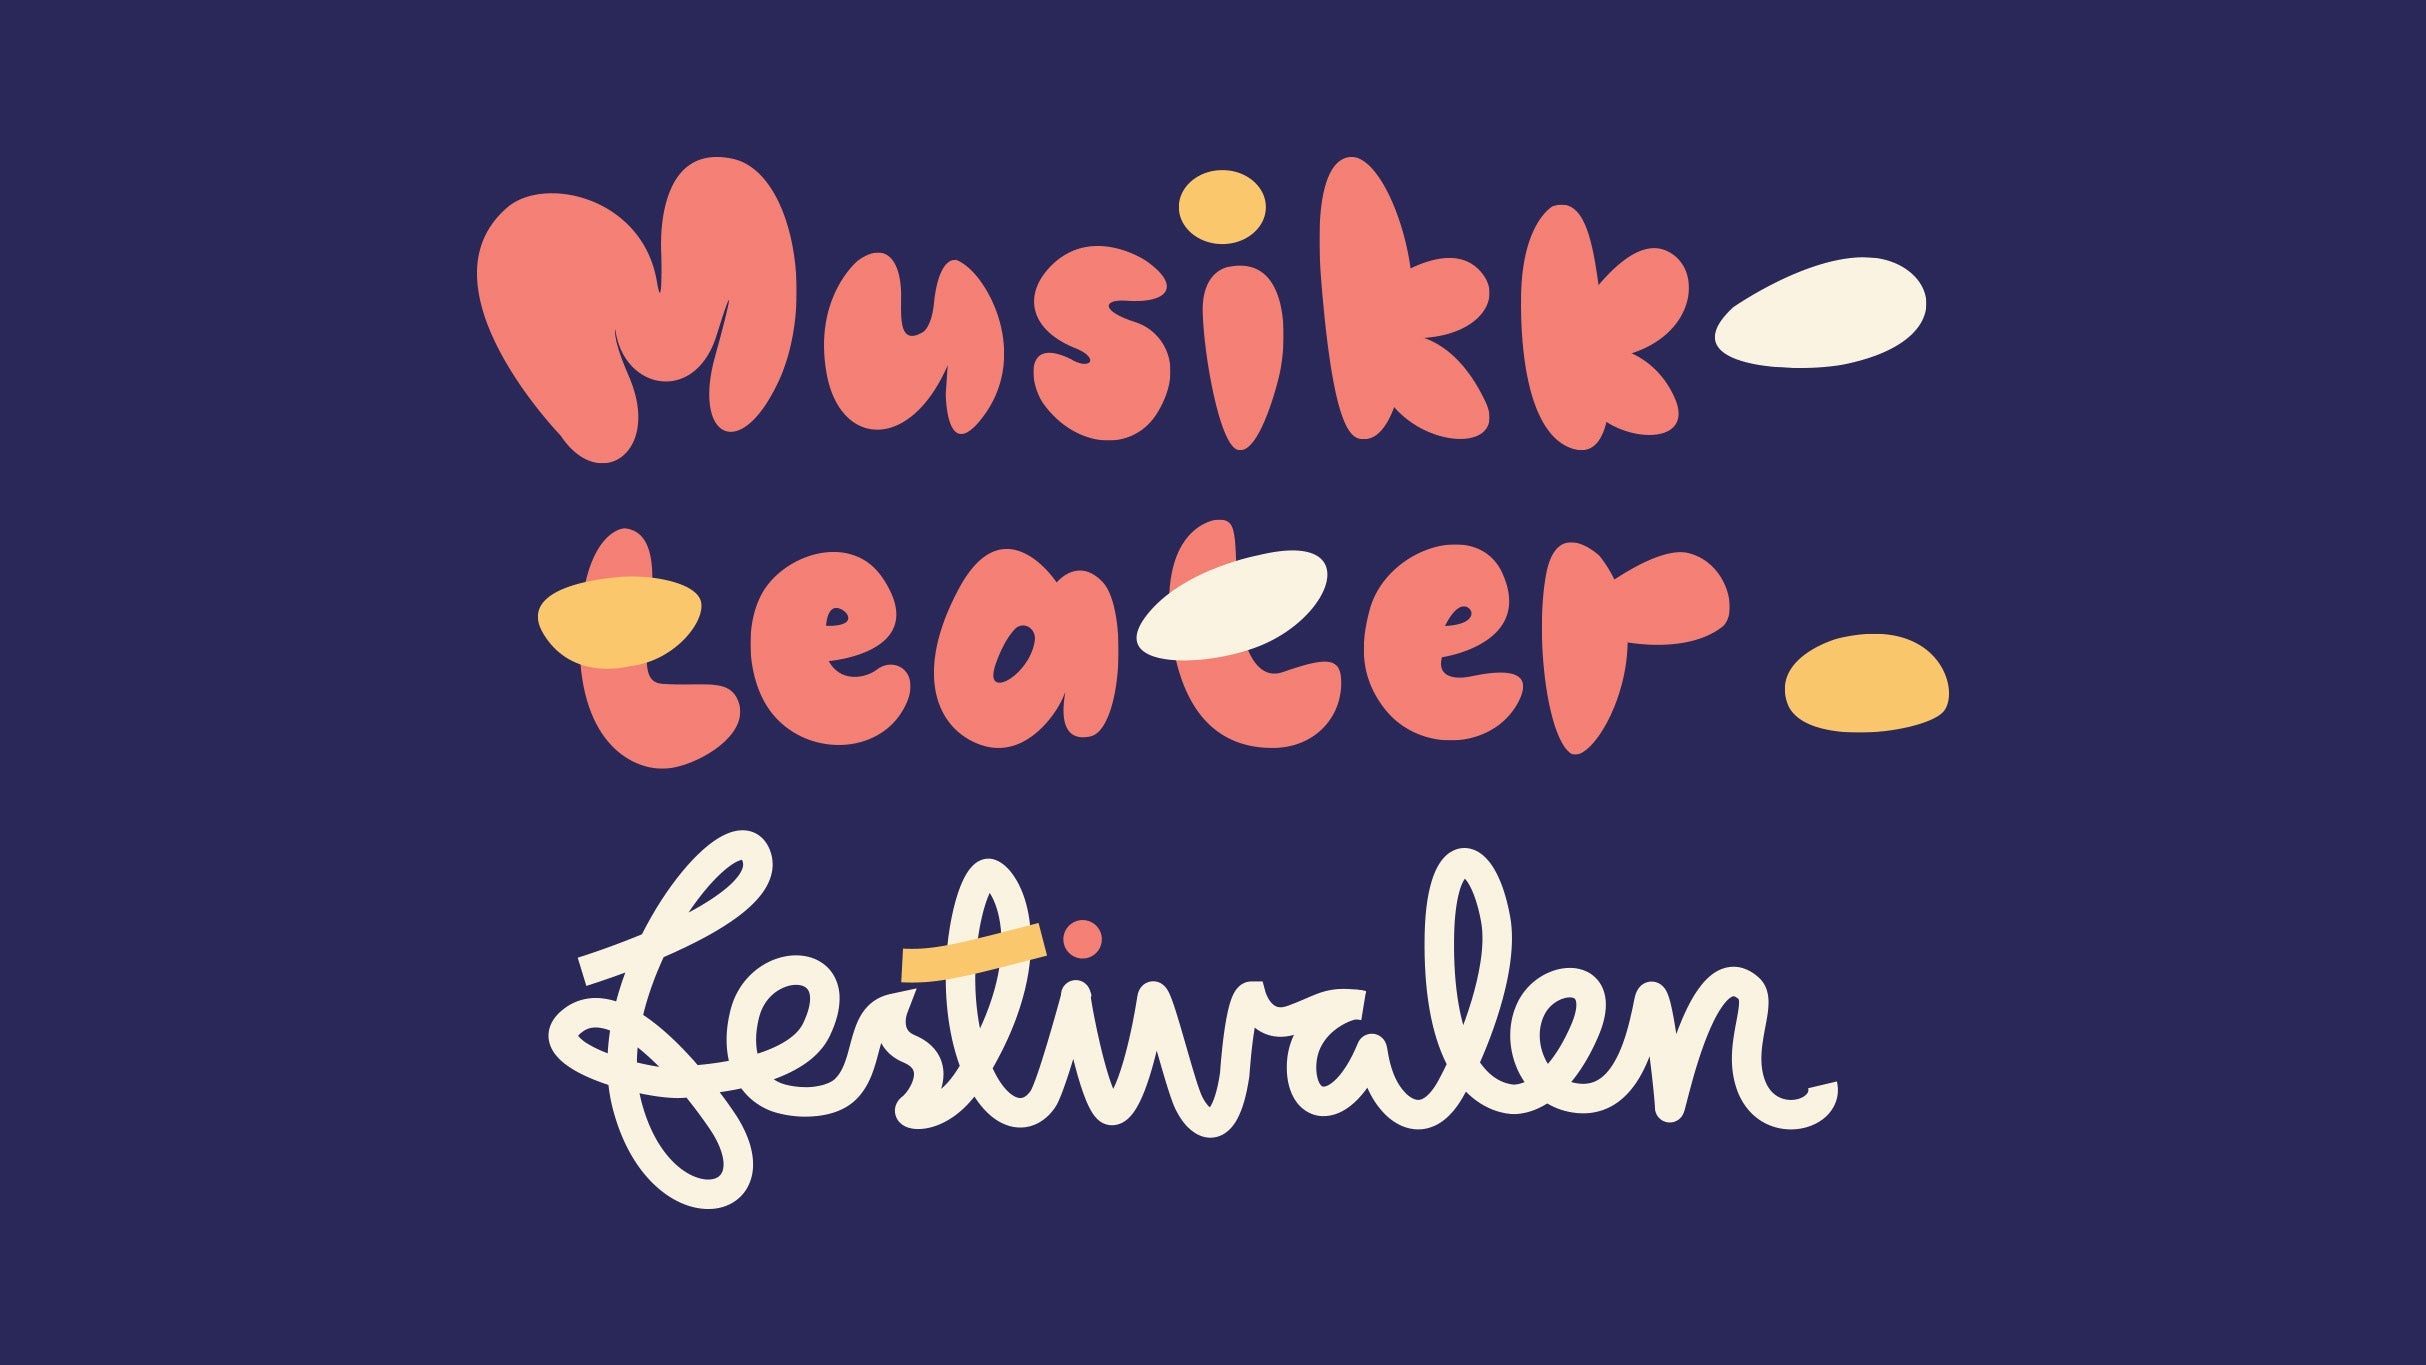 Musikkteaterfestivalen presale information on freepresalepasswords.com